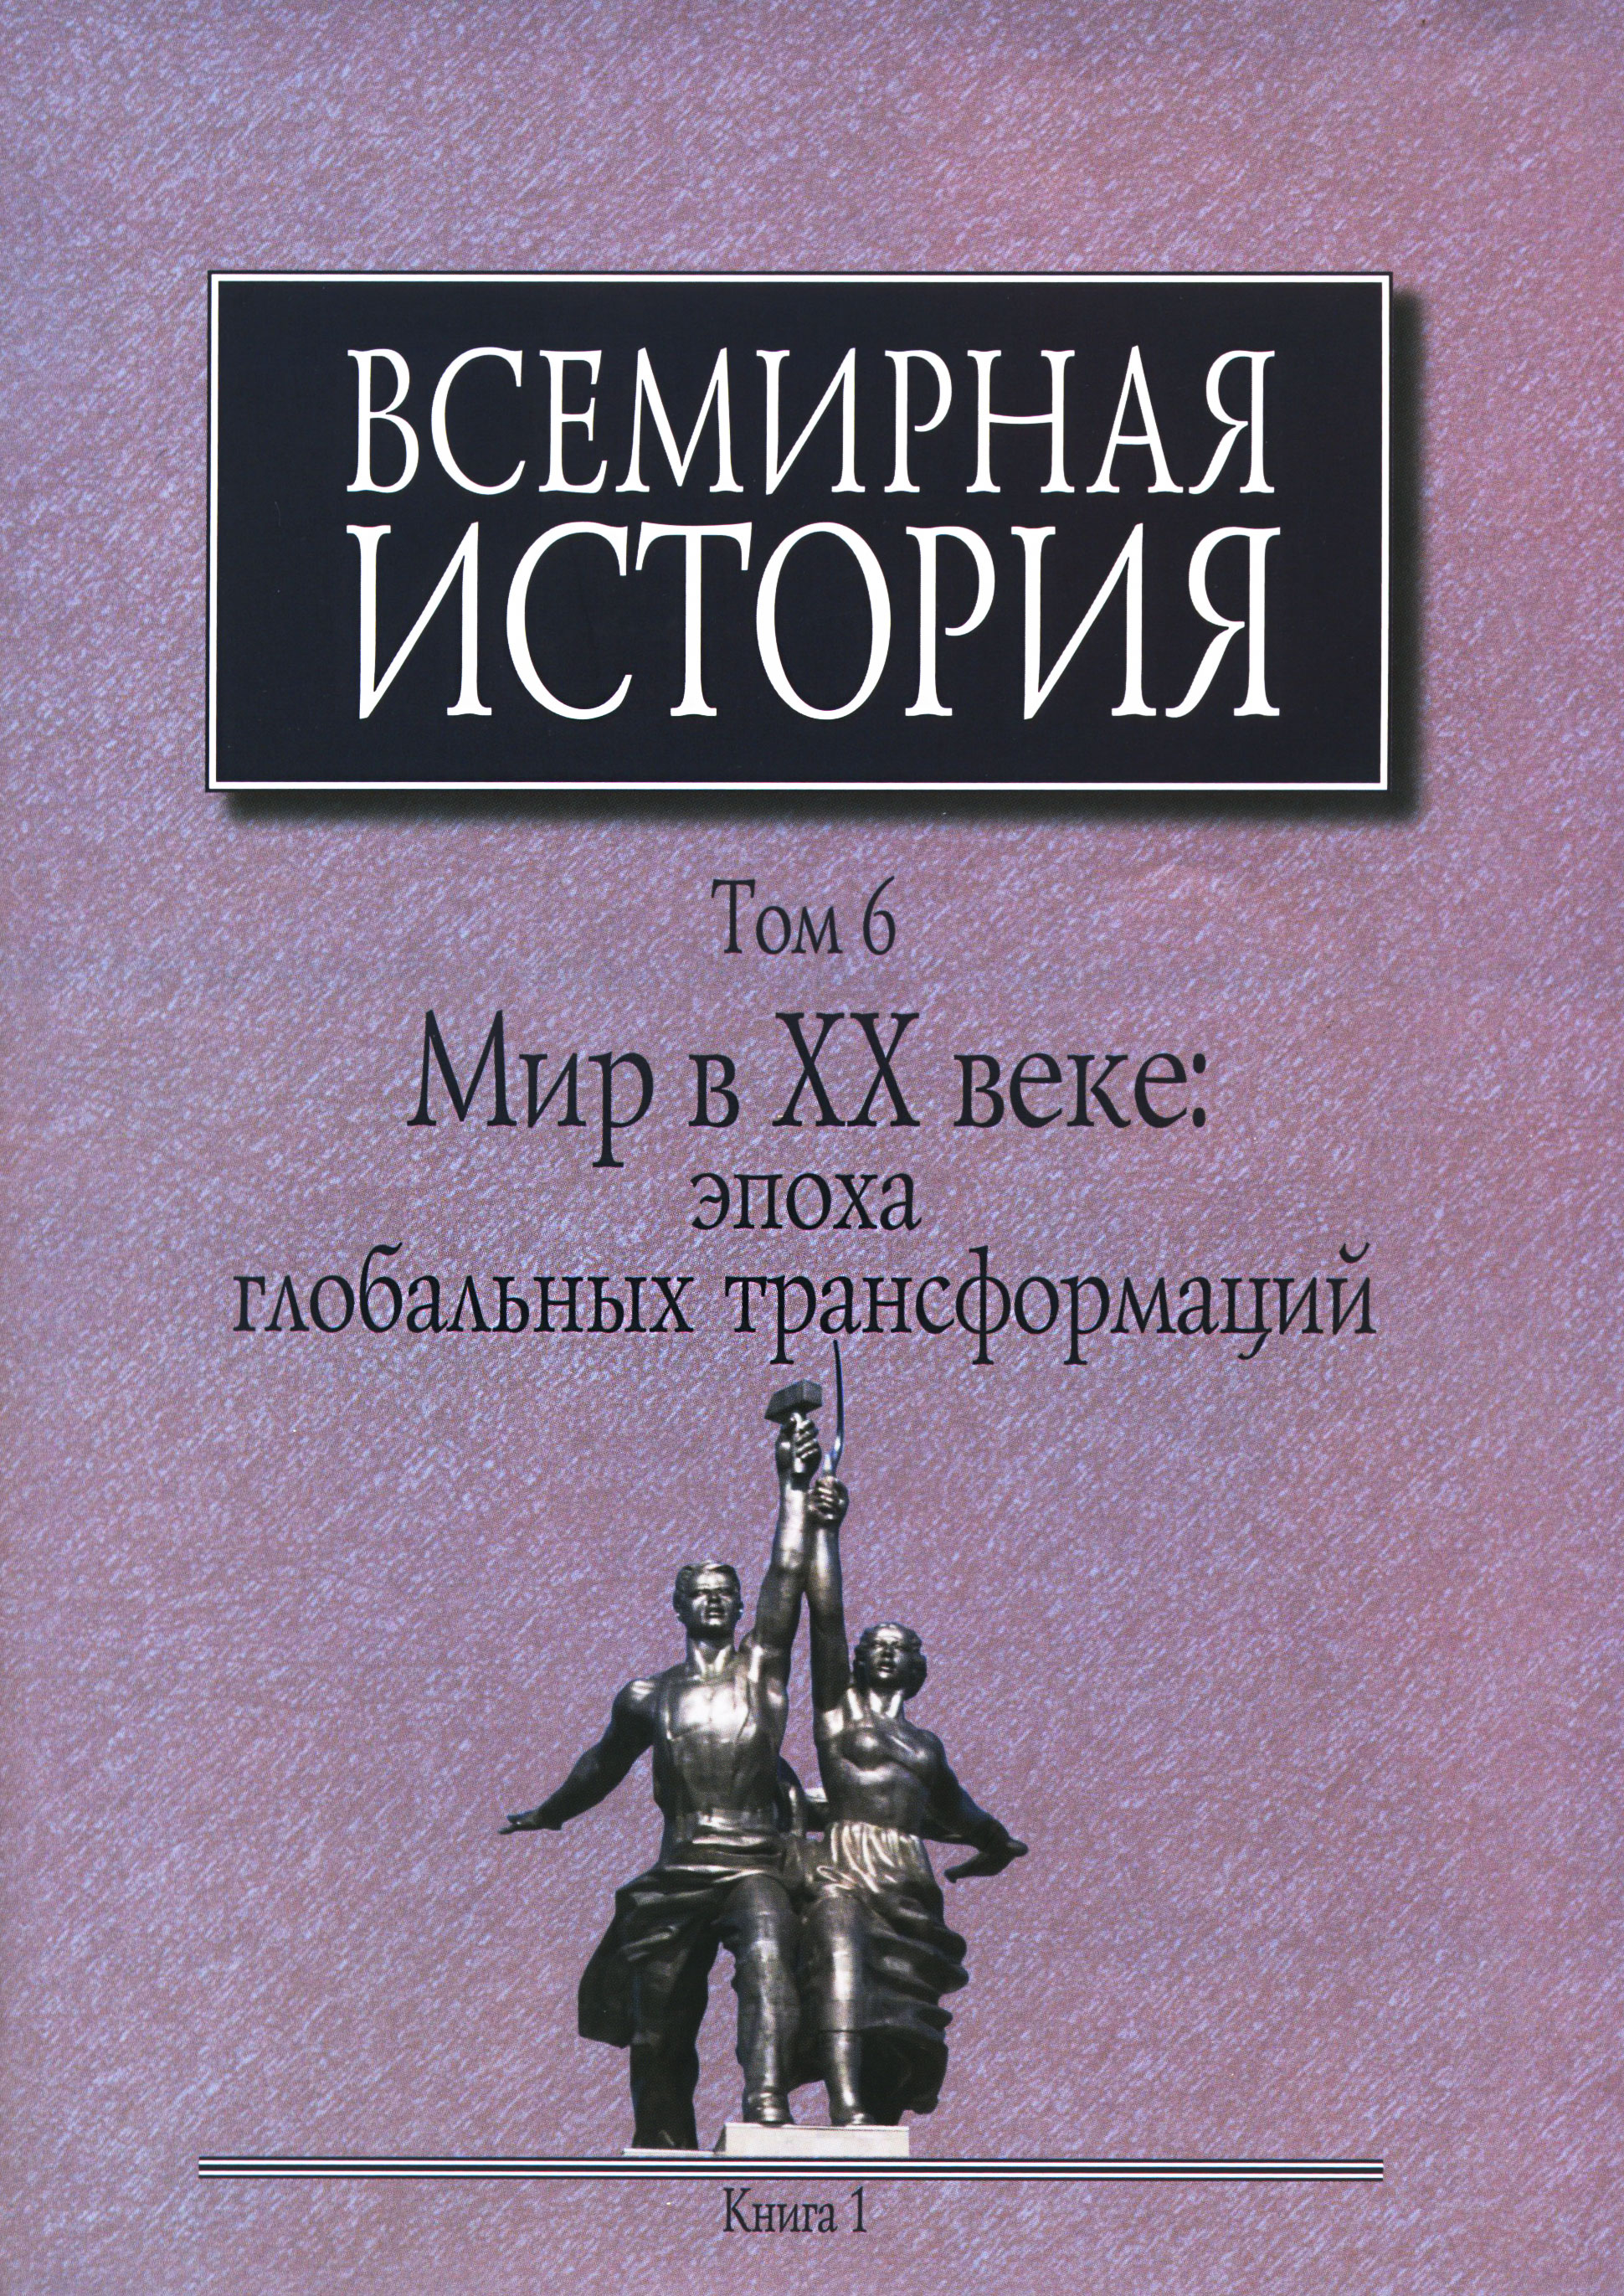 Рецензия Михаила Швыдкого на 6 том "Всемирной истории"